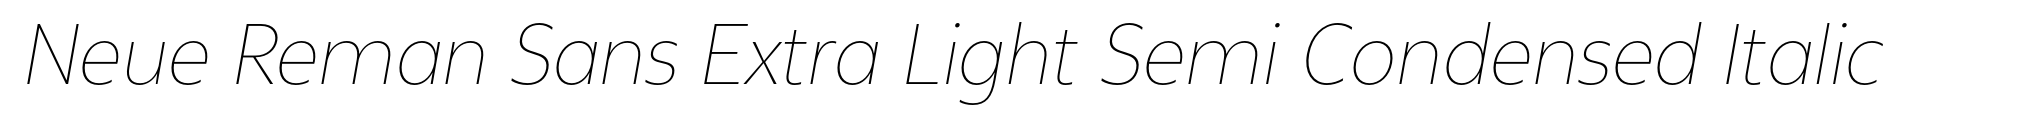 Neue Reman Sans Extra Light Semi Condensed Italic image